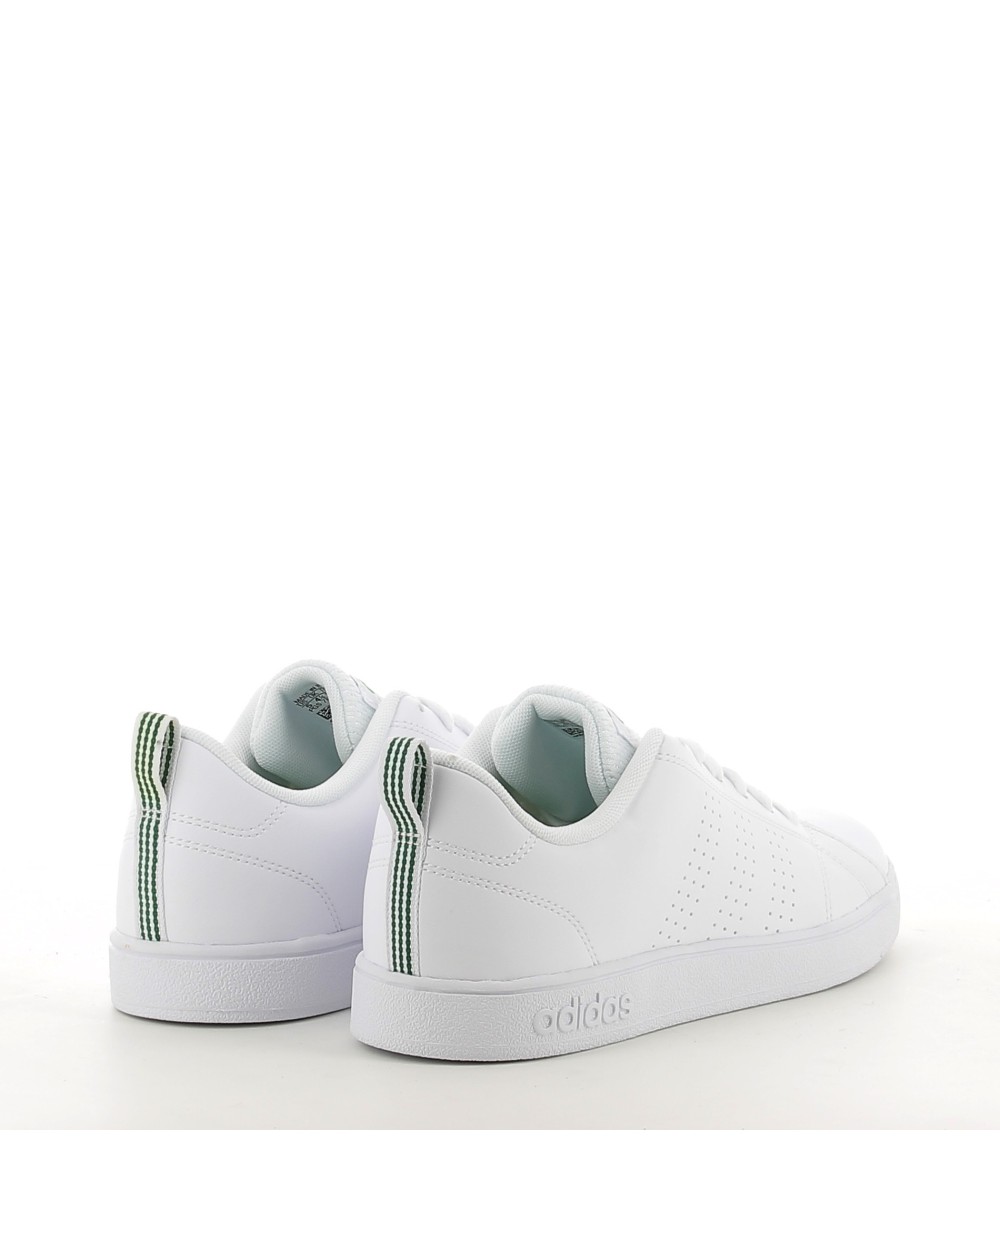 Sneakers Adidas VS CLEAN blanco. Zapatos